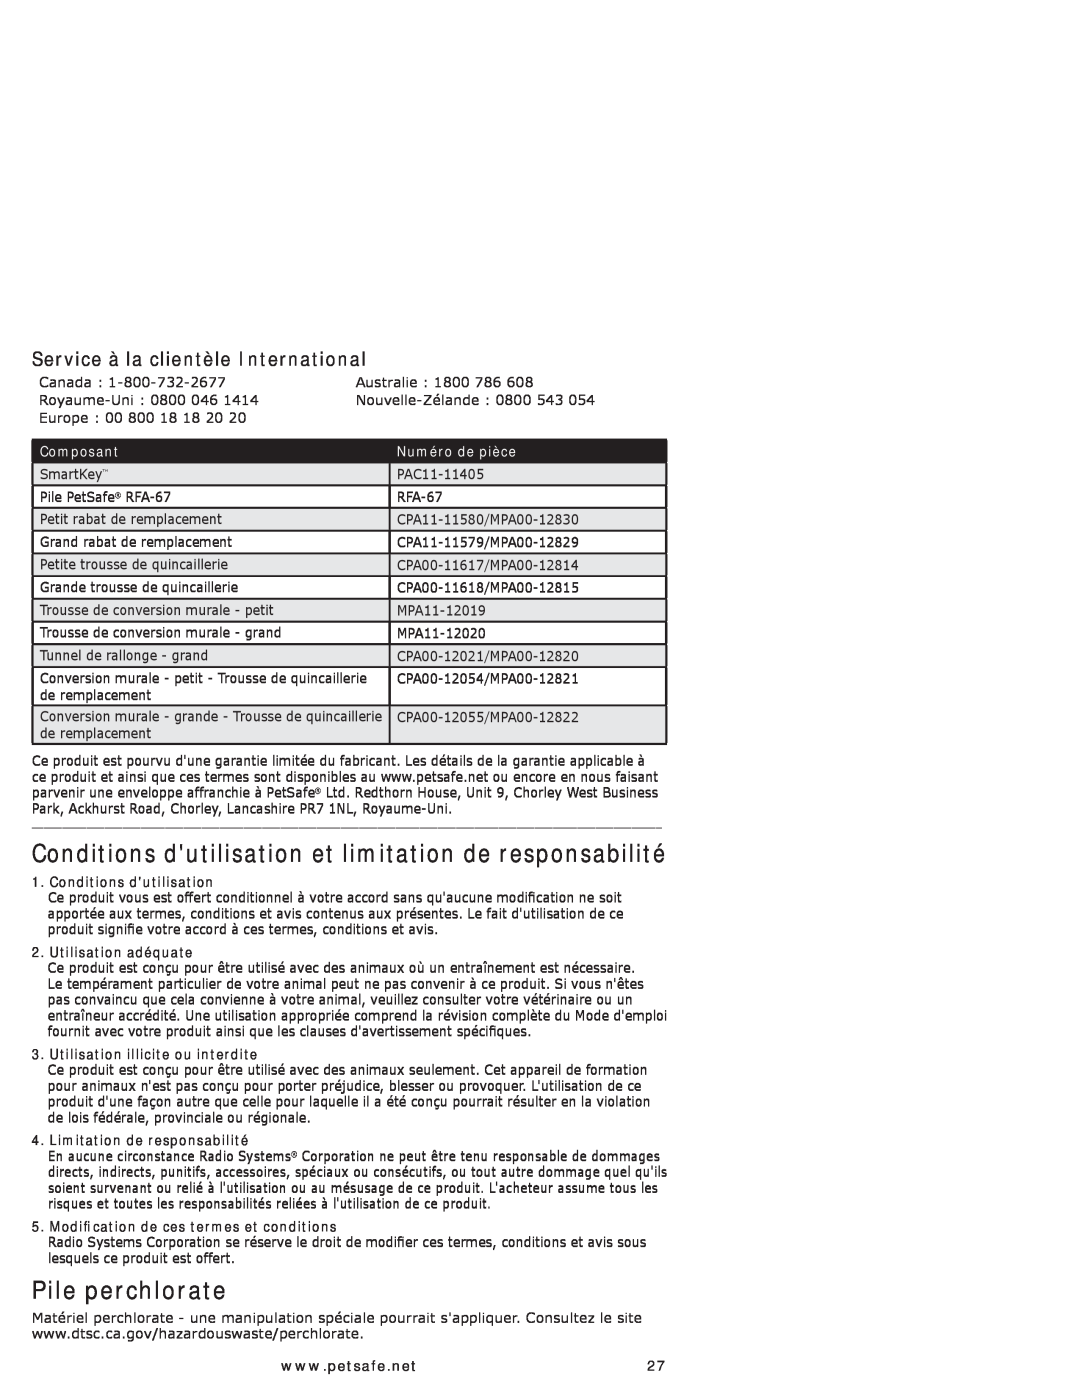 Petsafe PPA11-10709, PPA11-10711 manual Pile perchlorate, Service à la clientèle International, Composant, Numéro de pièce 